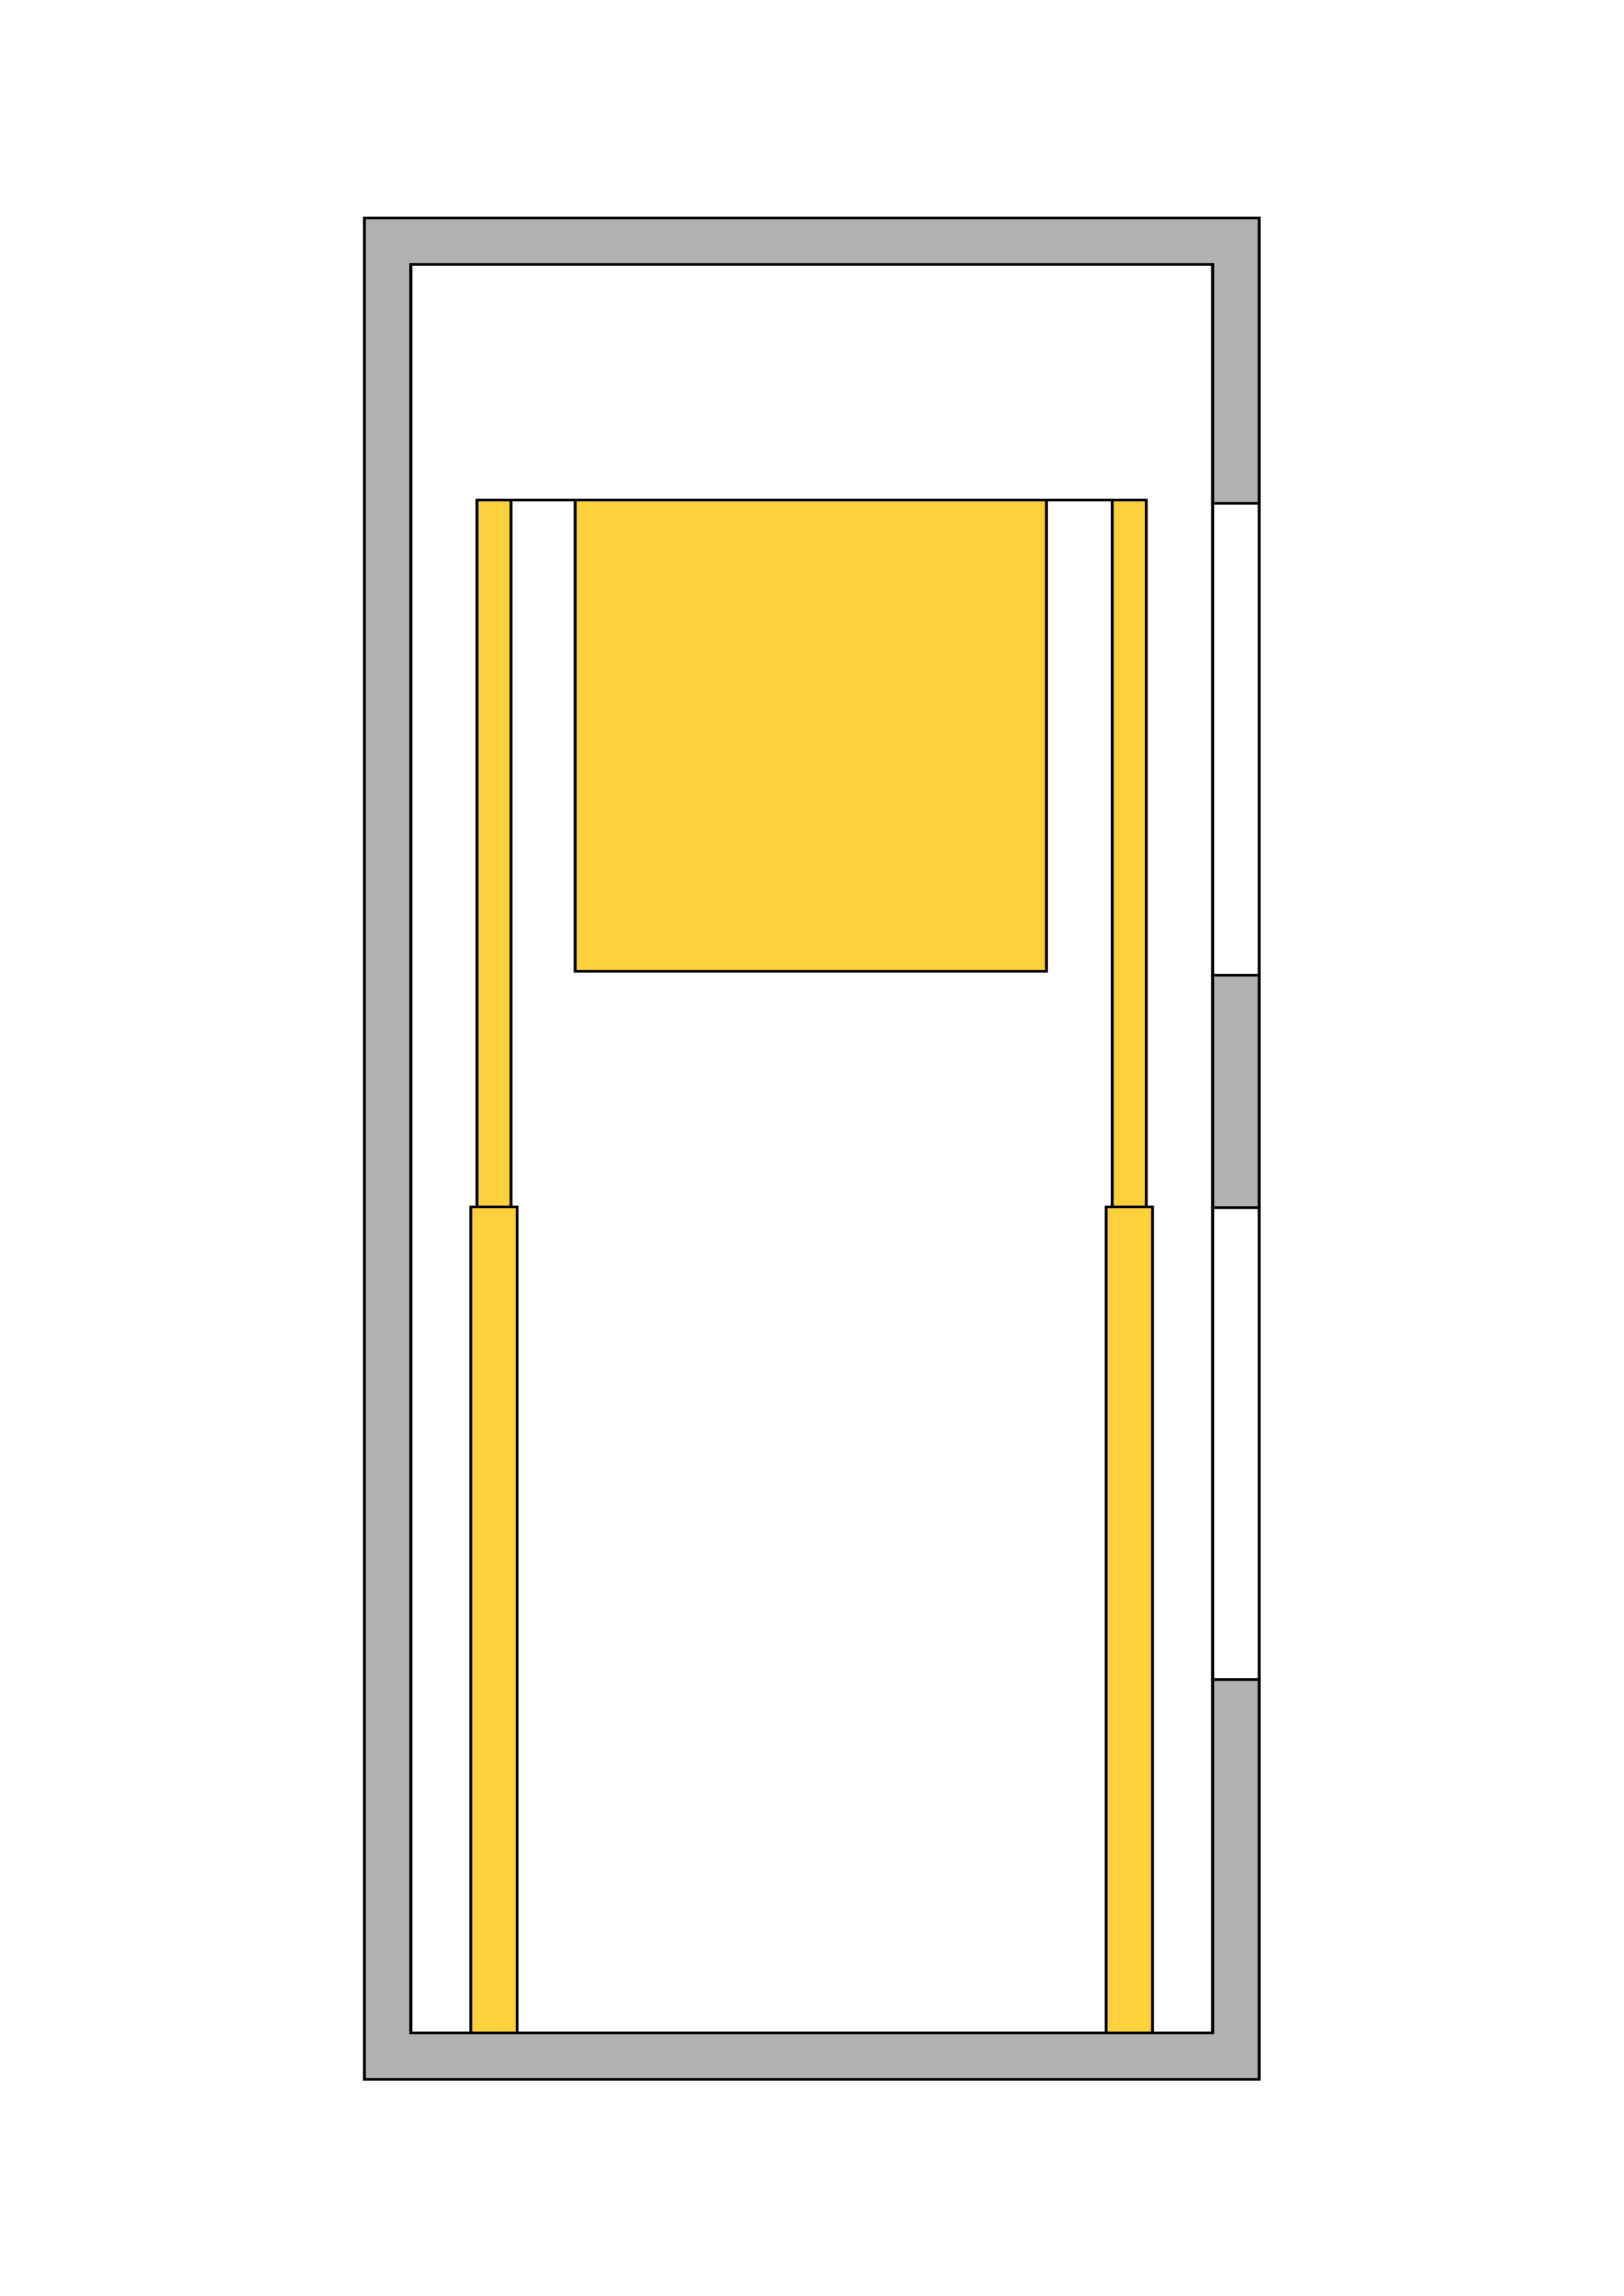 Гидравлический домкрат по индивидуальному заказу, два прямых боковых домкрата в гидравлическом лифте, телескопический домкрат, двусторонний гидравлический домкрат.